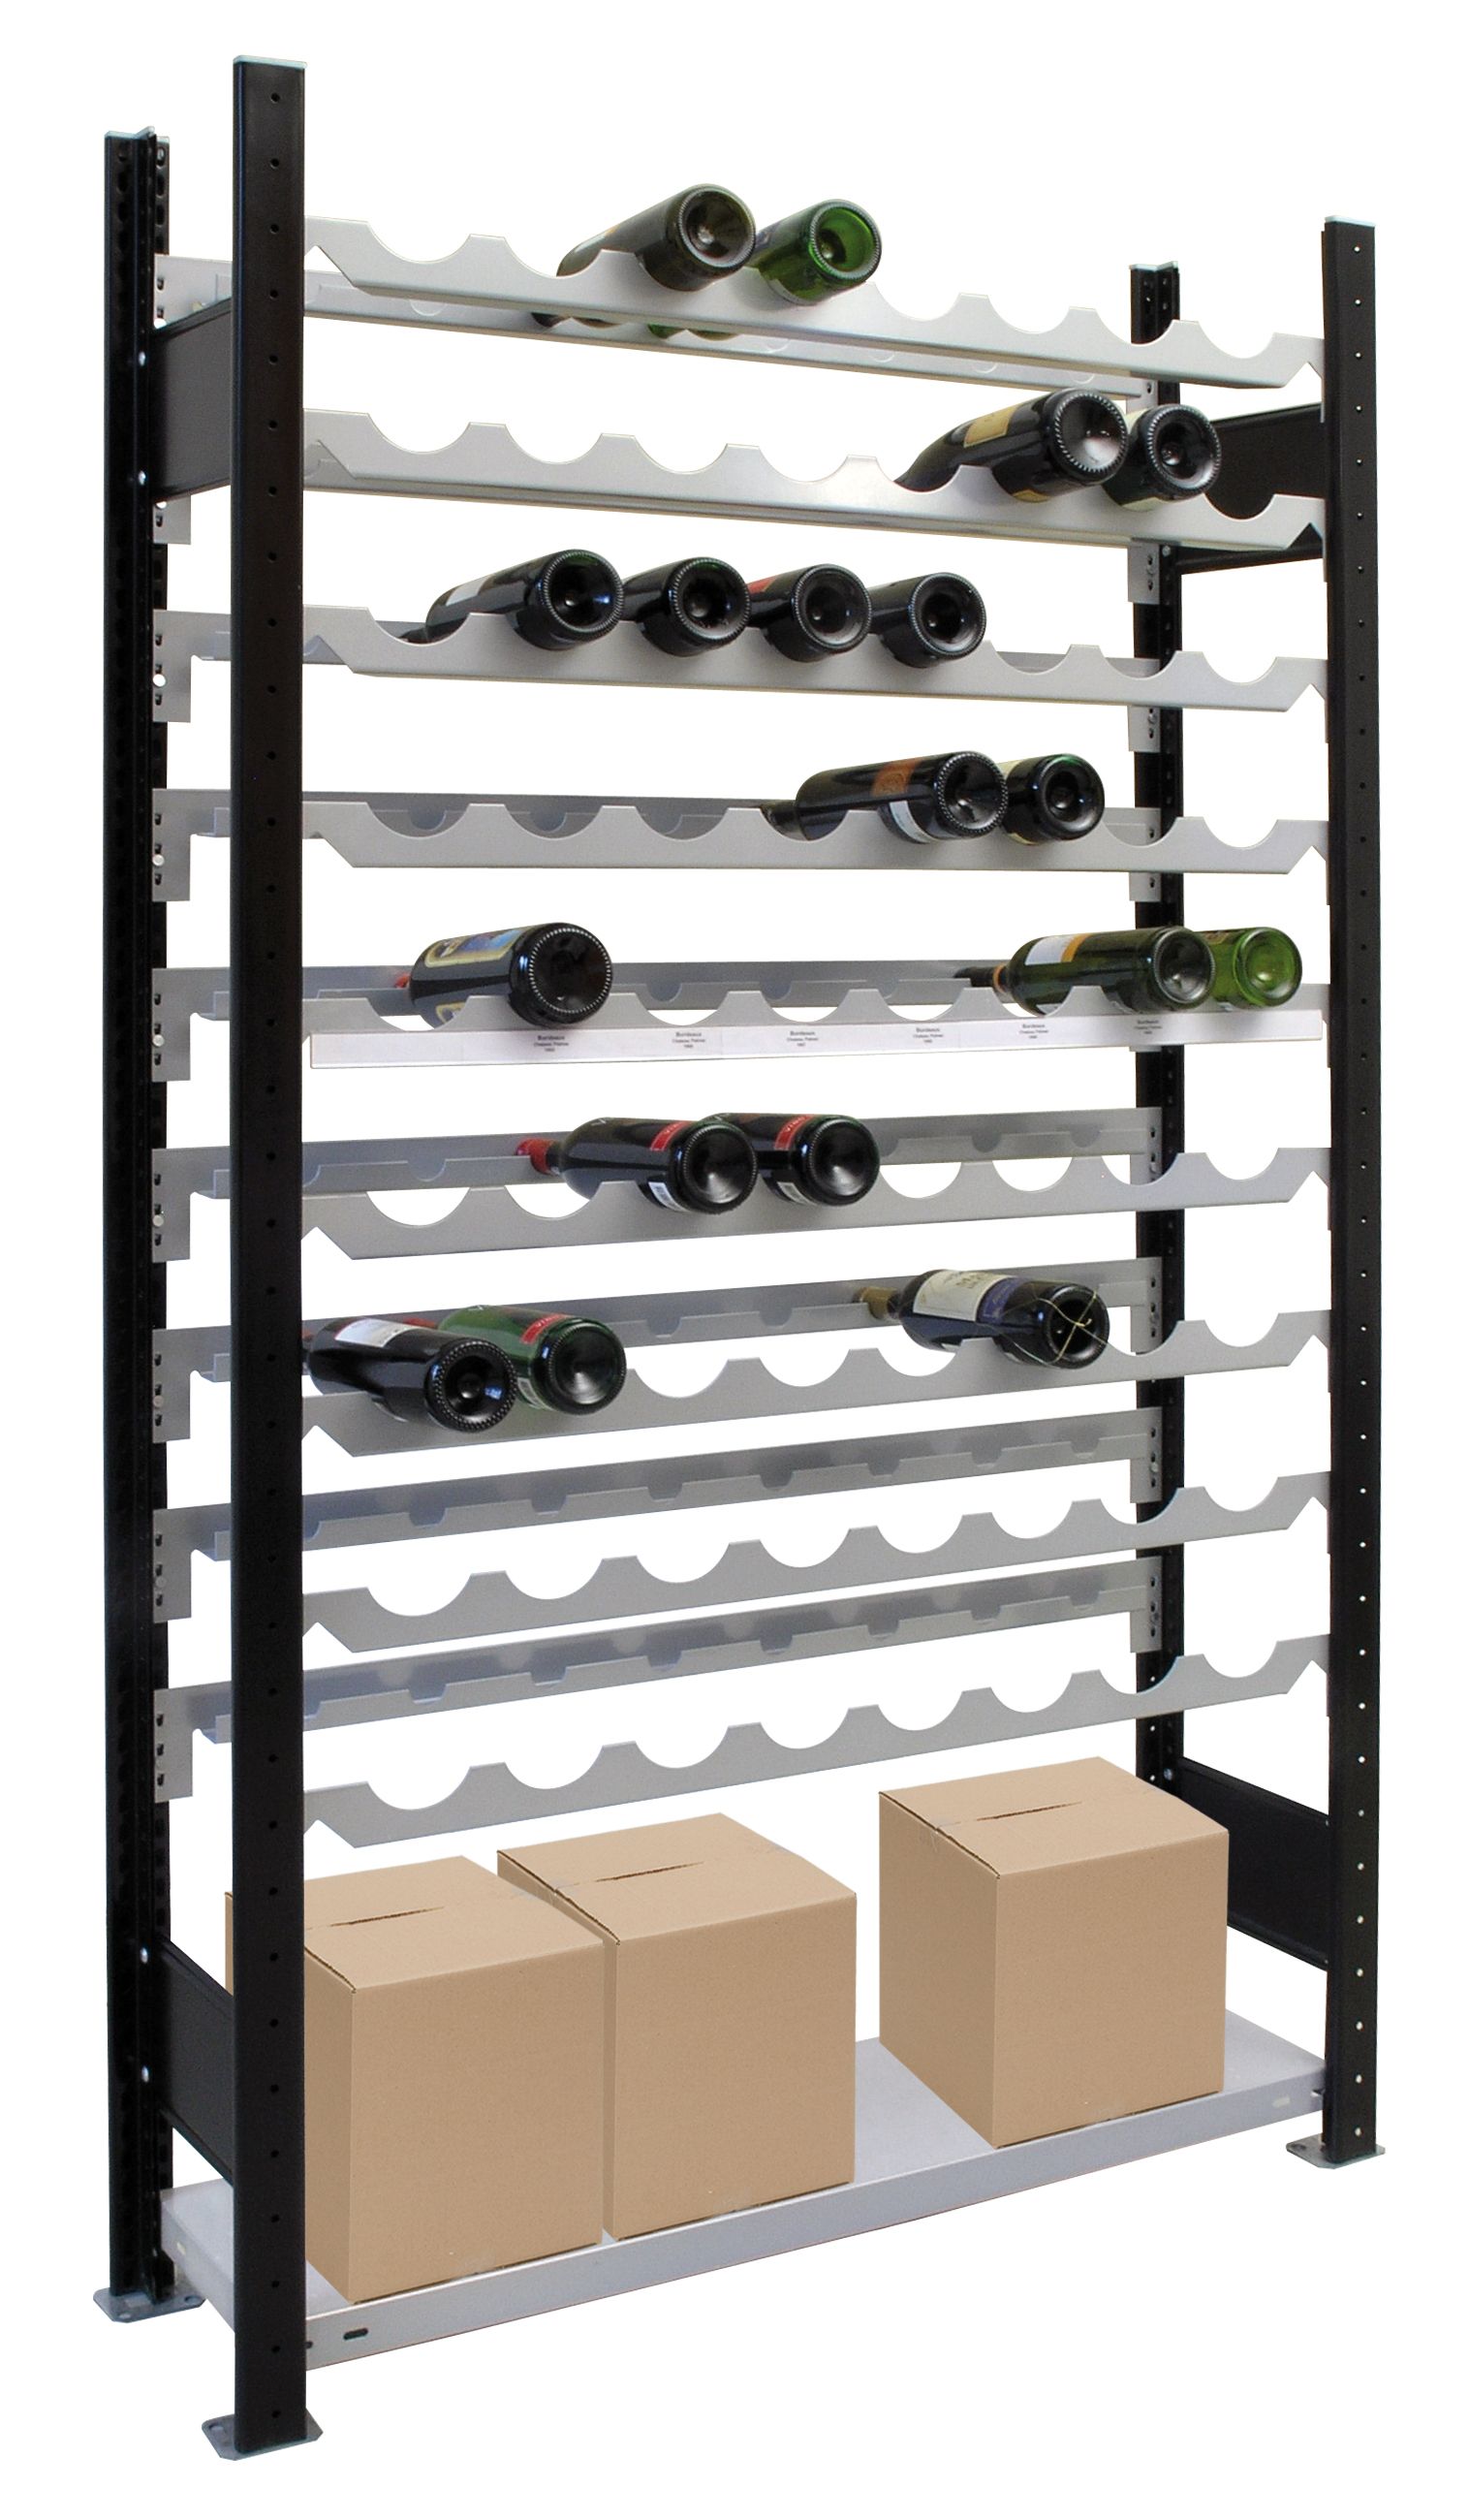 Weinregal für bis zu 72 Flaschen, 180x106x25 cm (HxBxT), Traglast pro Ebene 85 Kg, schwarz-silber